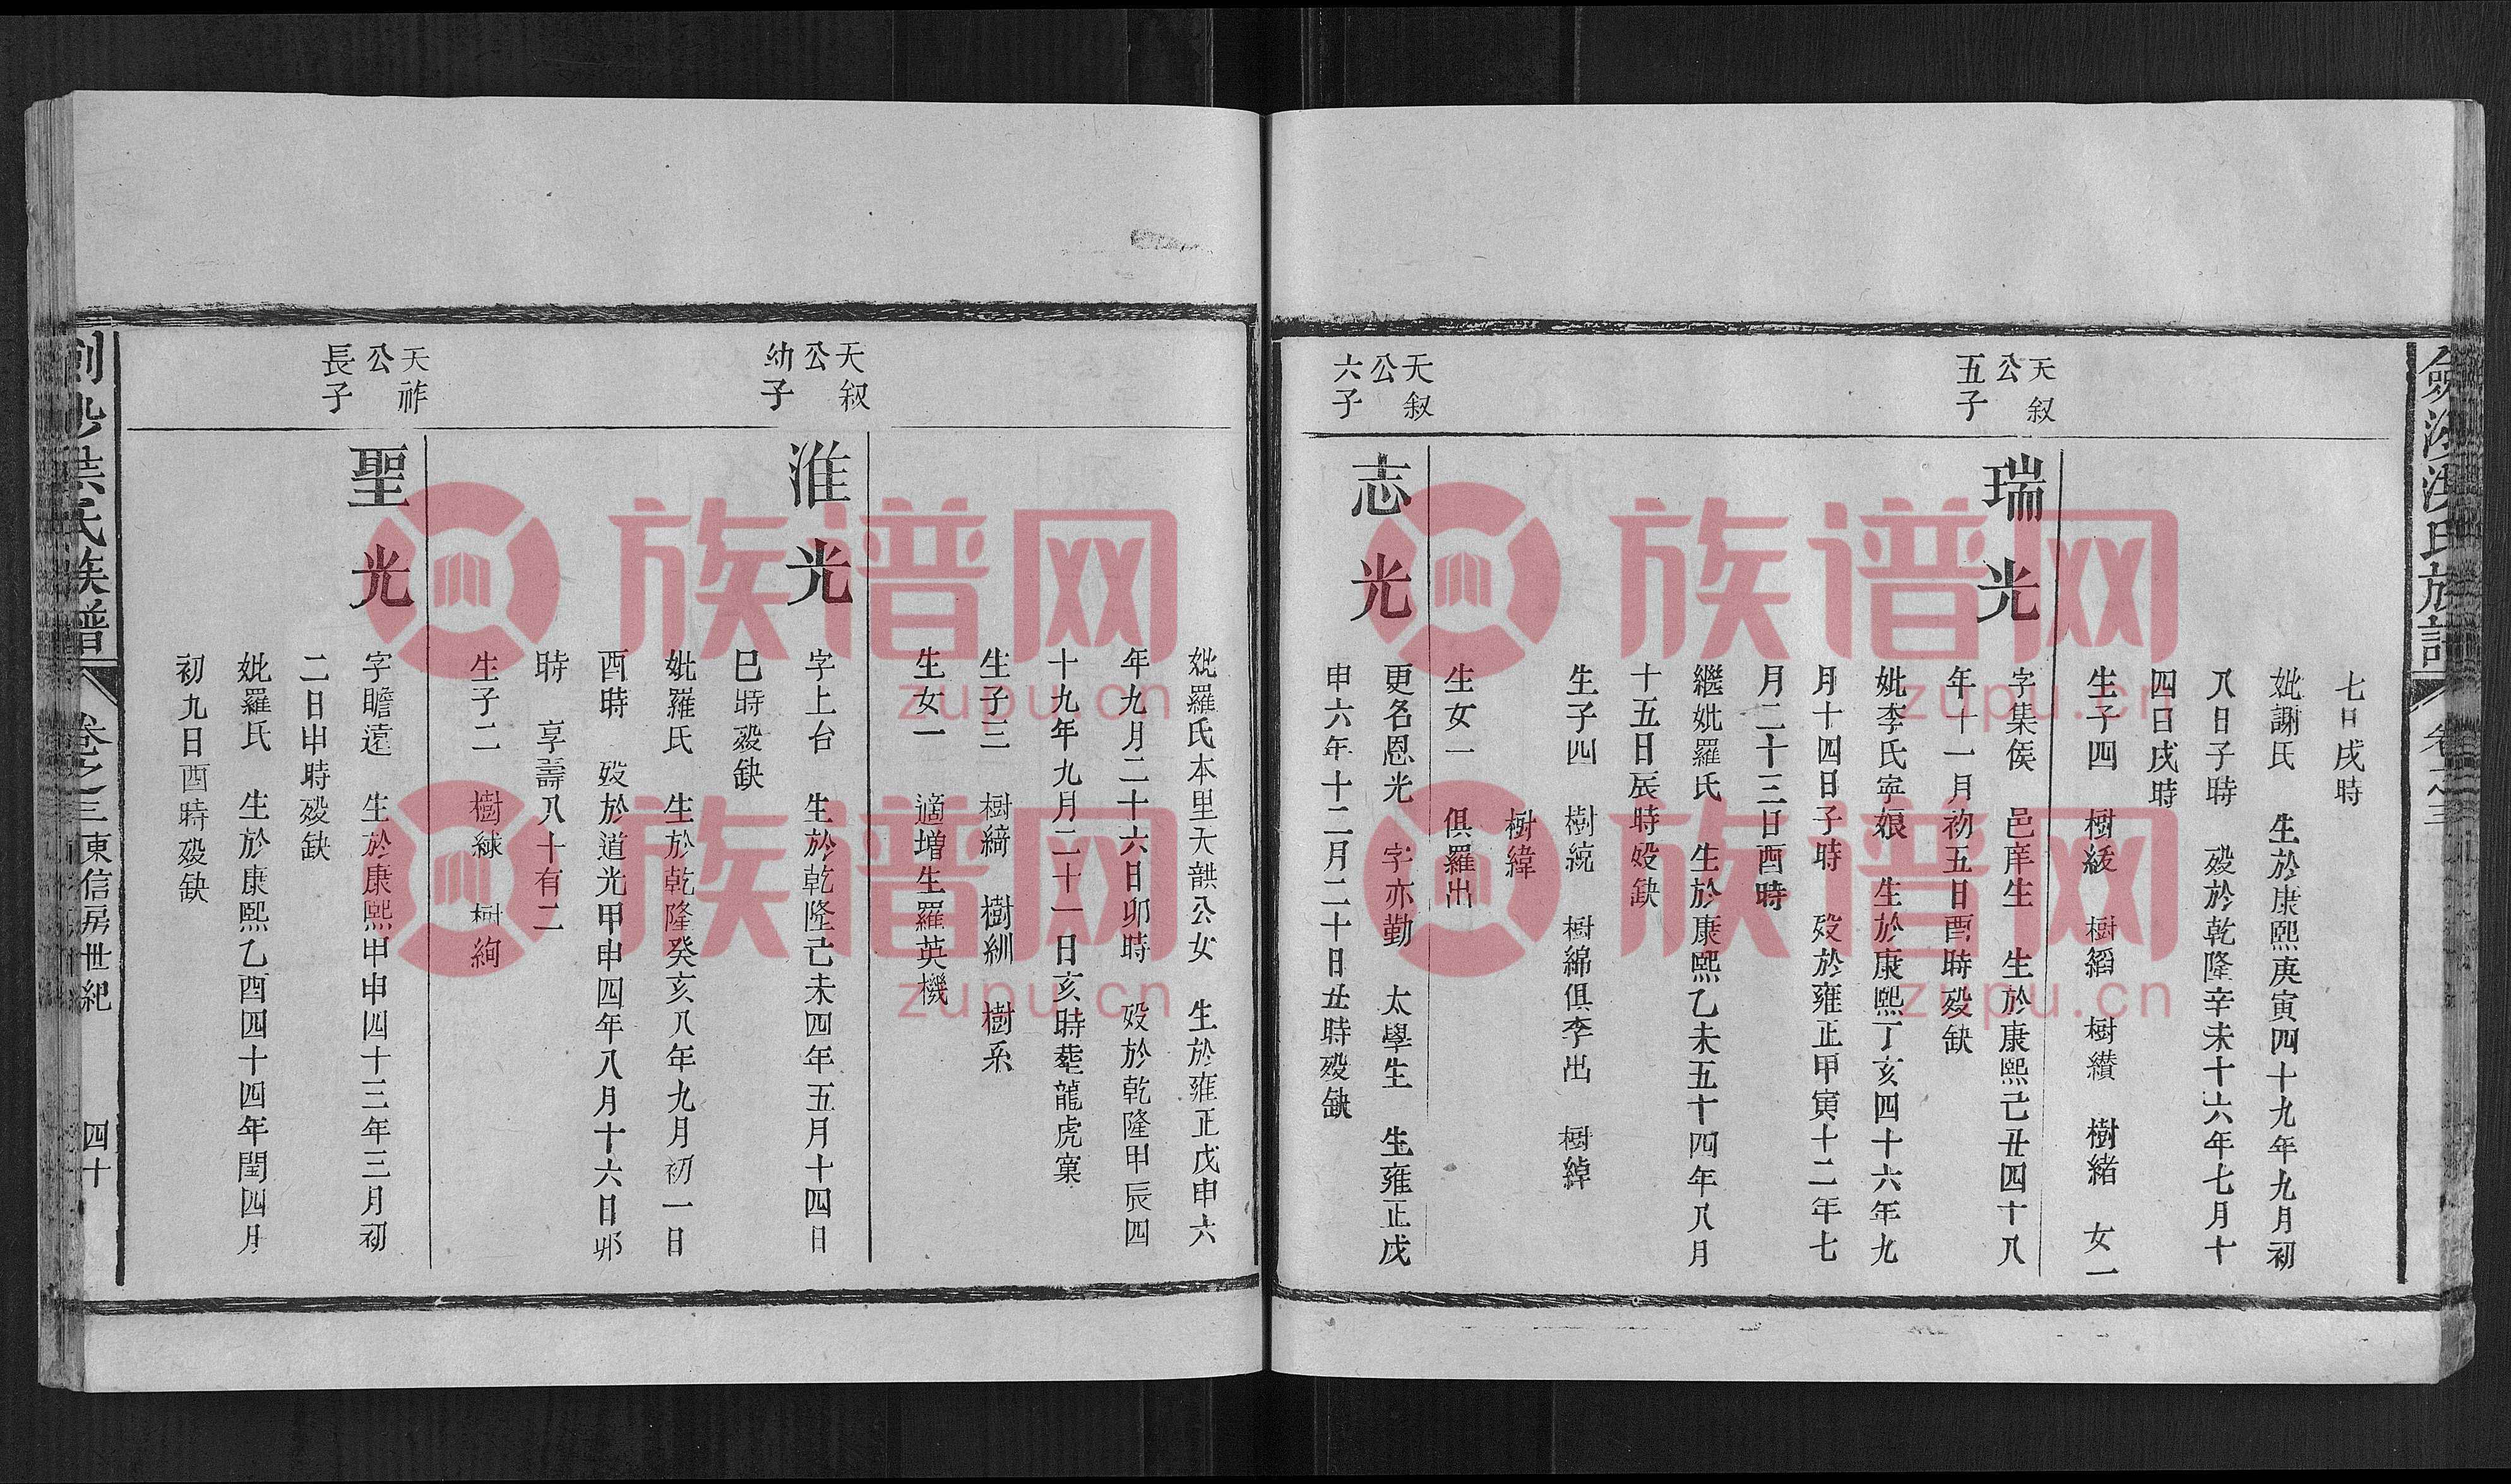 剑沙洪氏族谱, 6, 960